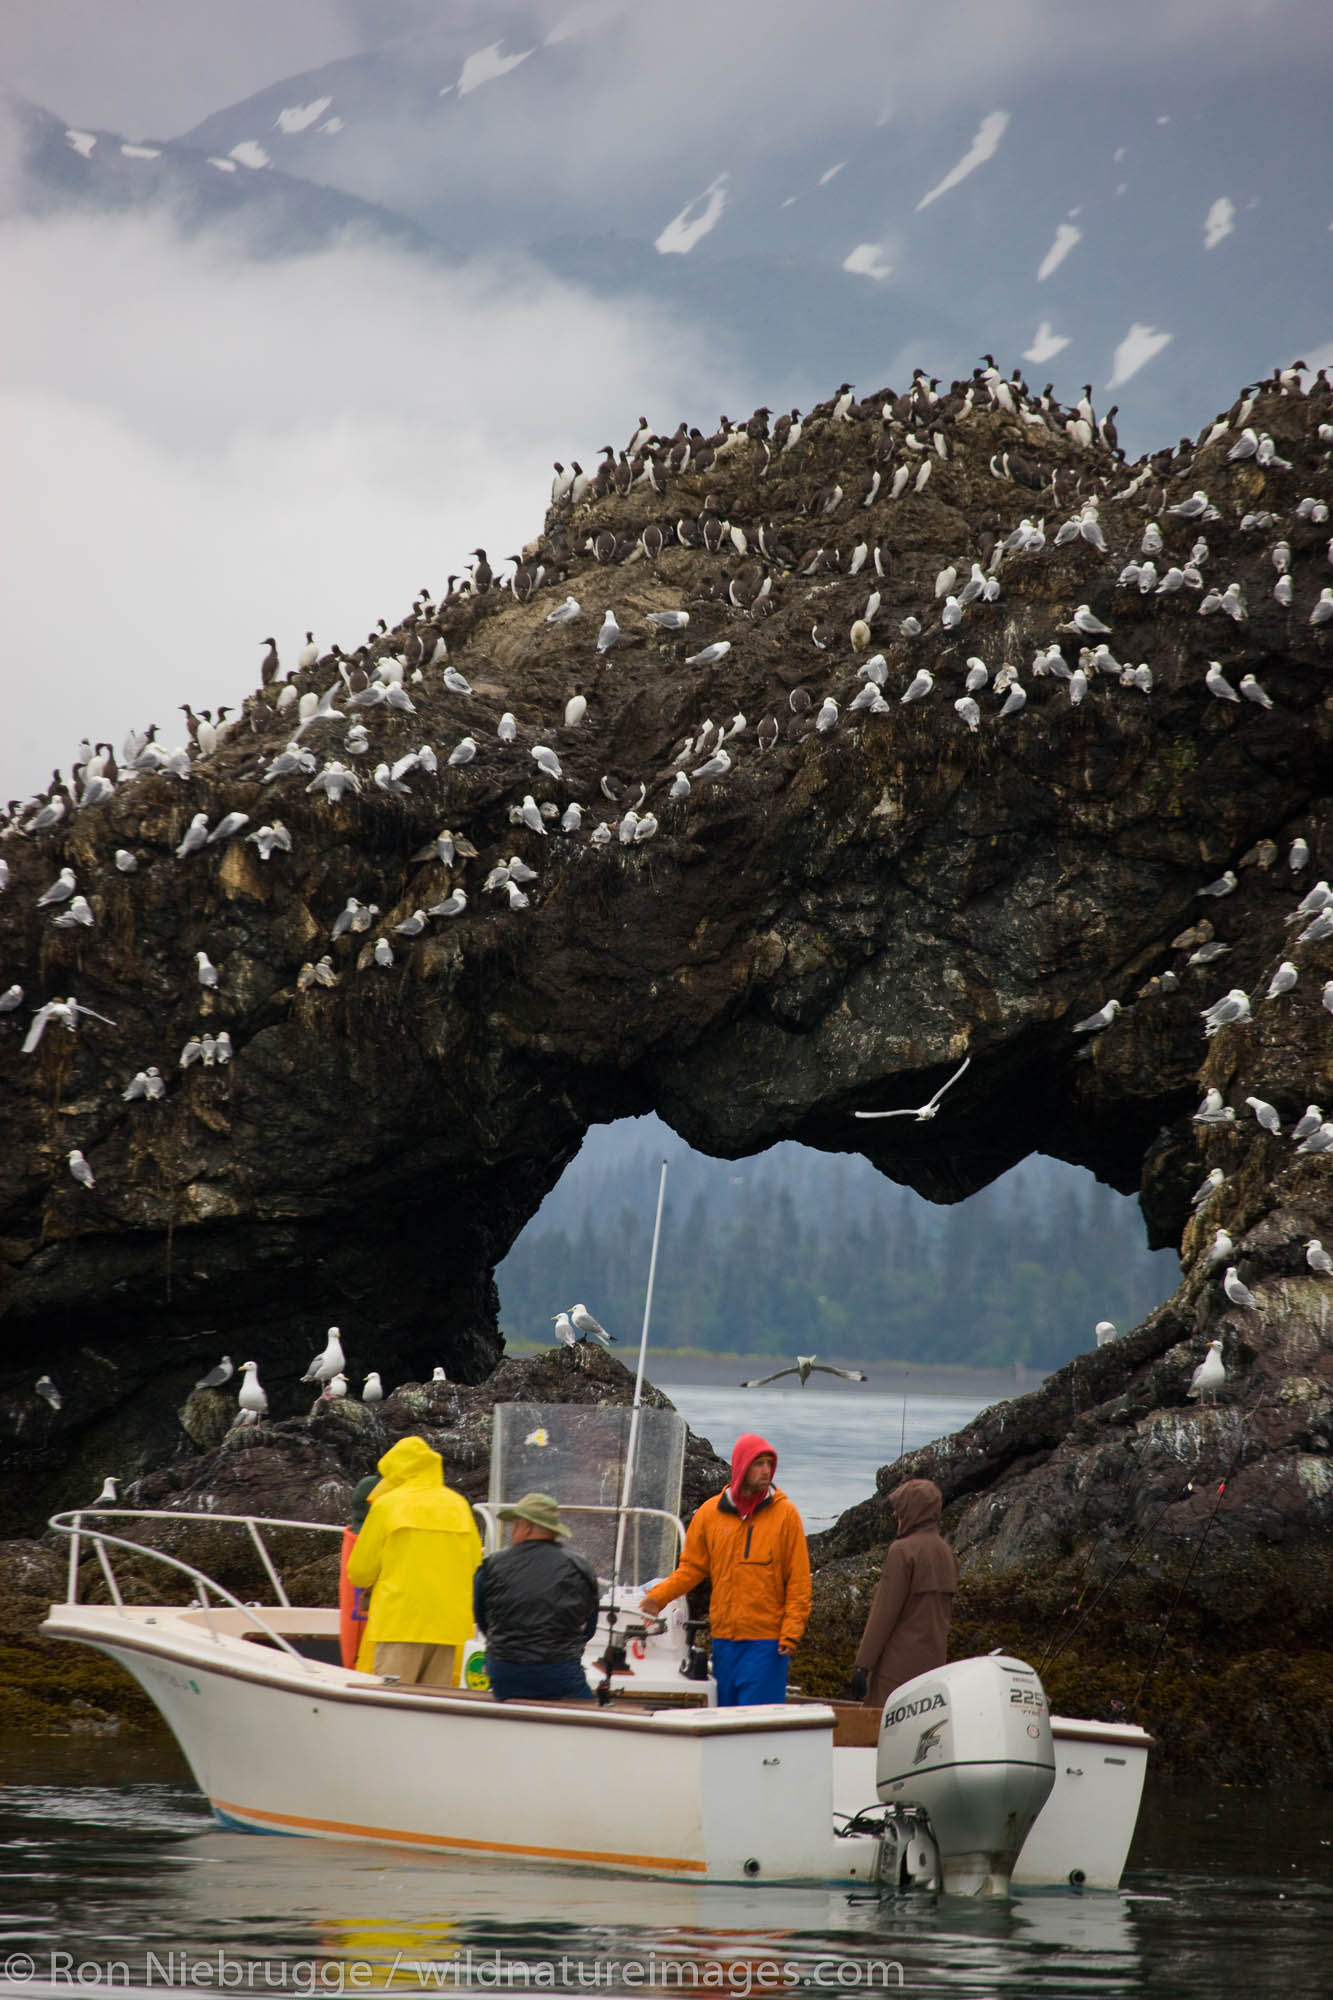 Passengers watching birds on Gull Island, Kachemak Bay near Homer, Alaska.